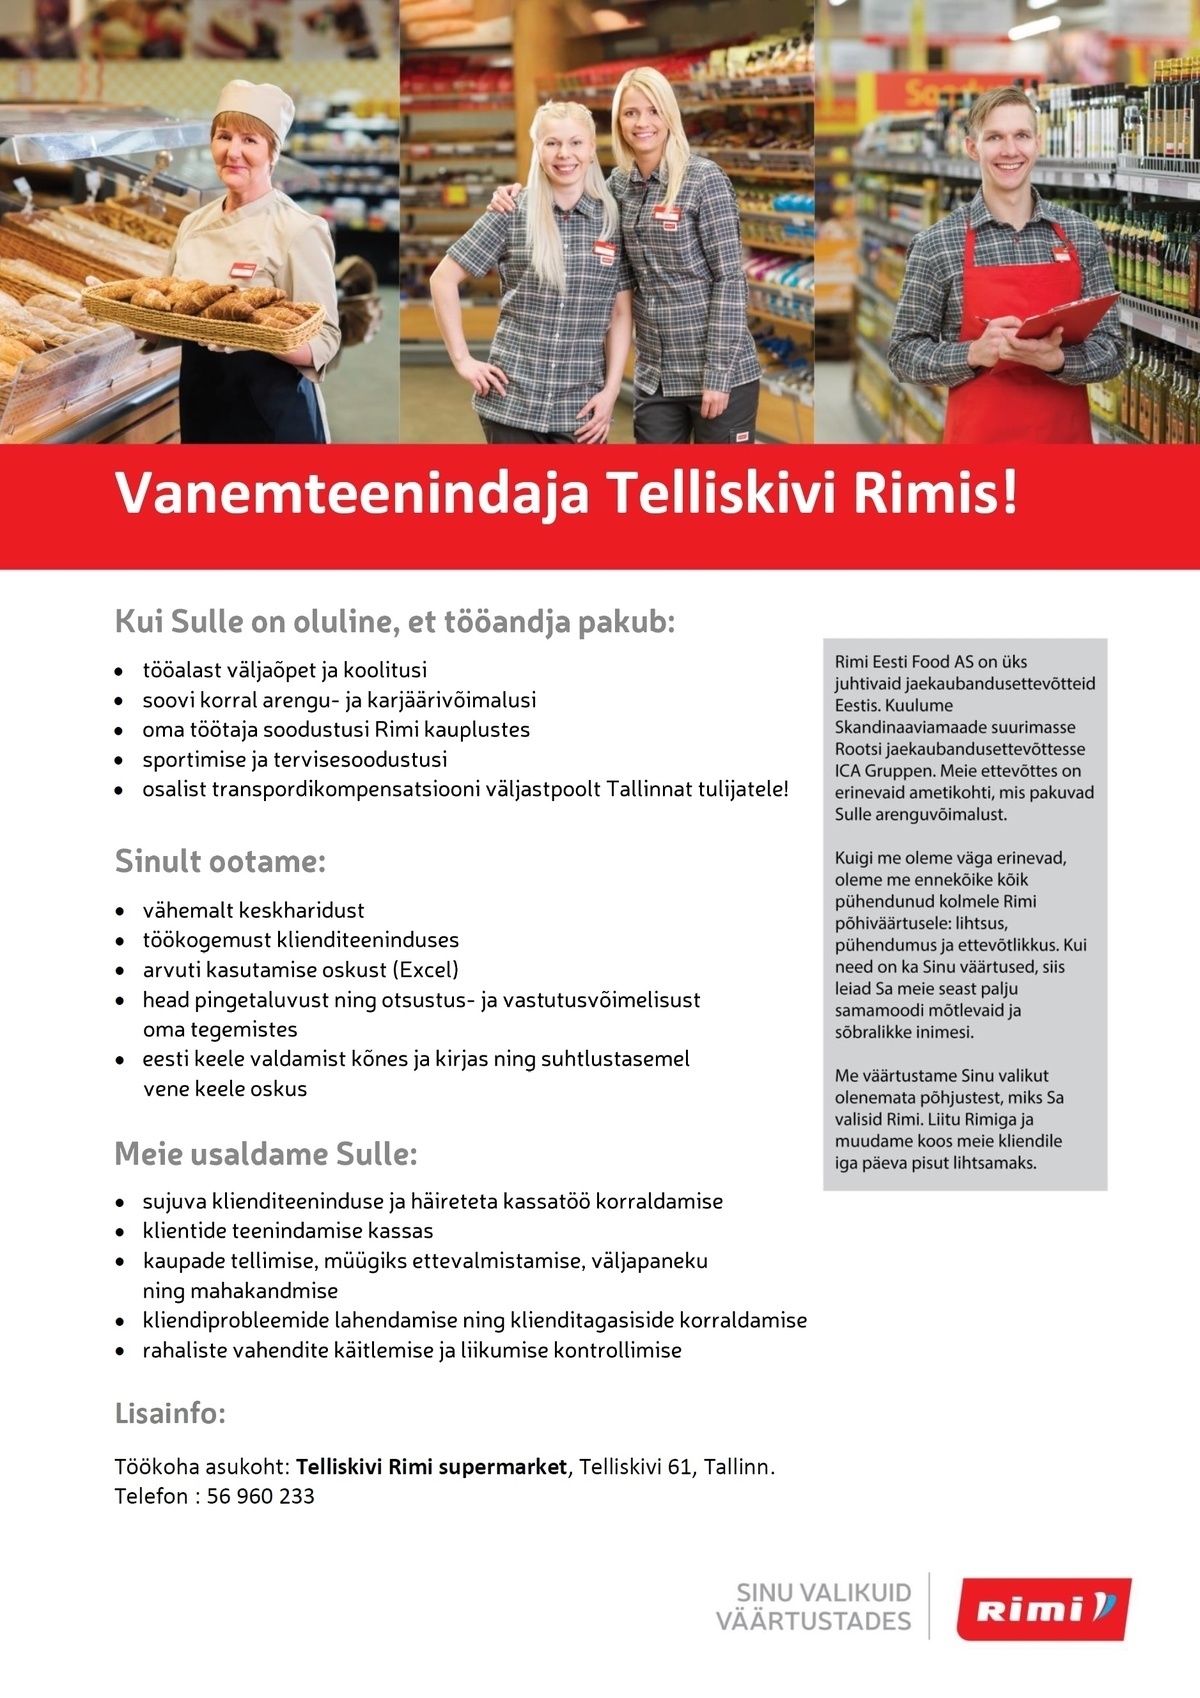 Rimi Eesti Food AS Vanemteenindaja Telliskivi Rimi supermarketis!